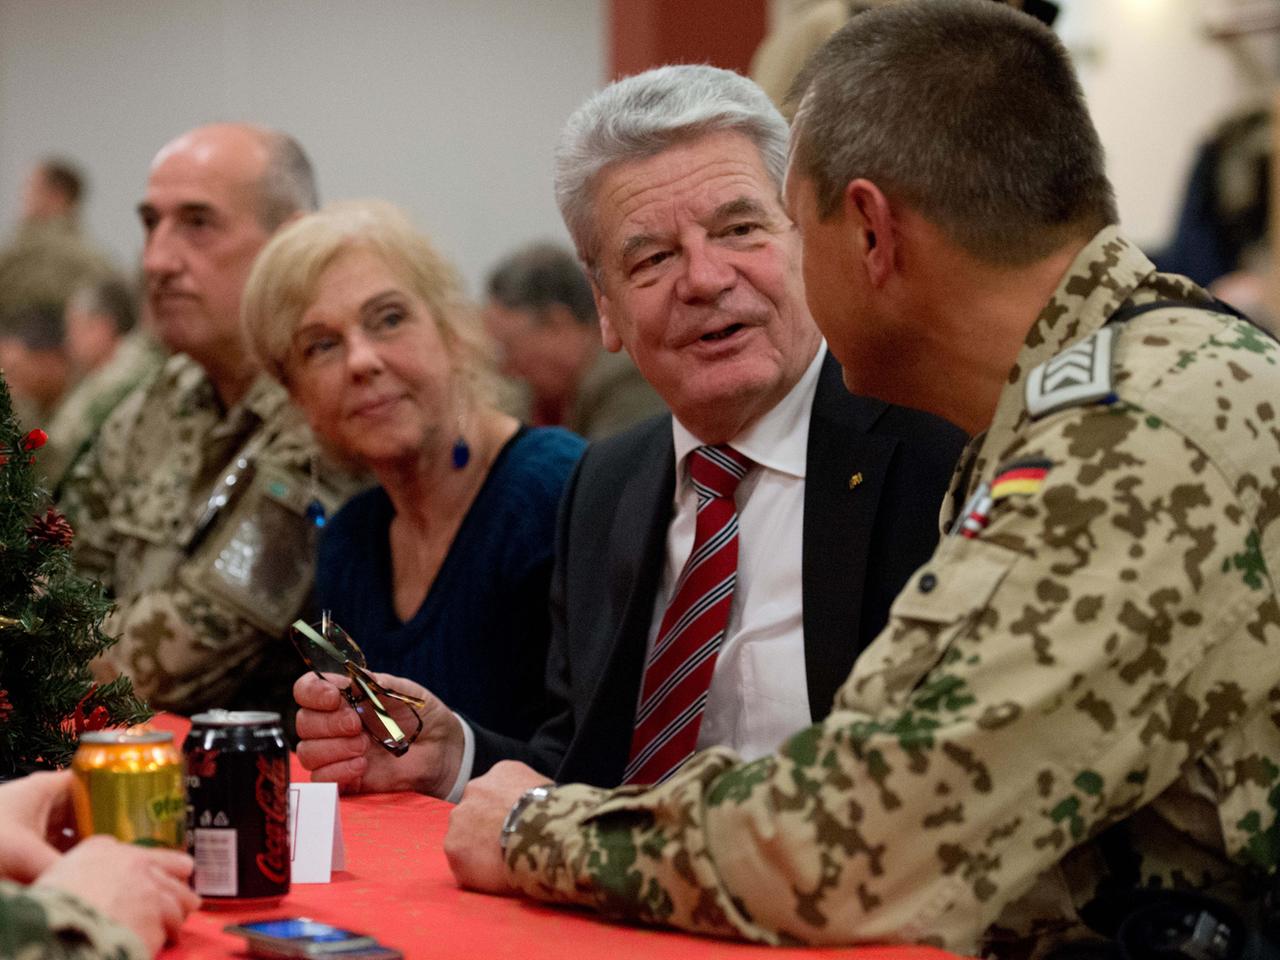 Bundespräsident Gauck Im Gespräch mit Bundeswehrsoldaten in Afghanistan.